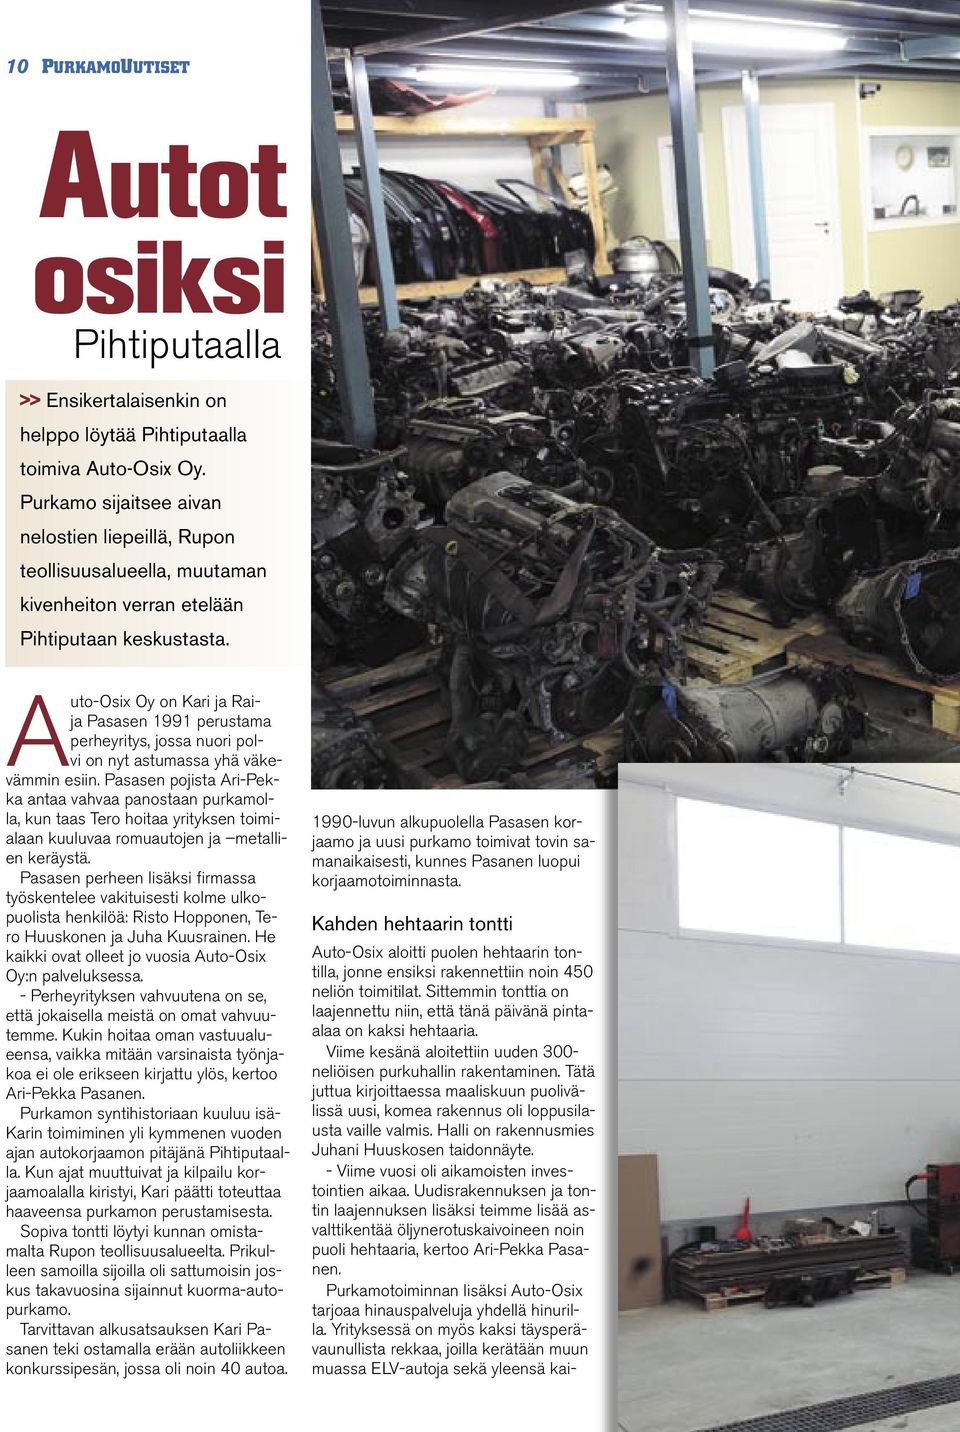 Auto-Osix Oy on Kari ja Raija Pasasen 1991 perustama perheyritys, jossa nuori polvi on nyt astumassa yhä väkevämmin esiin.